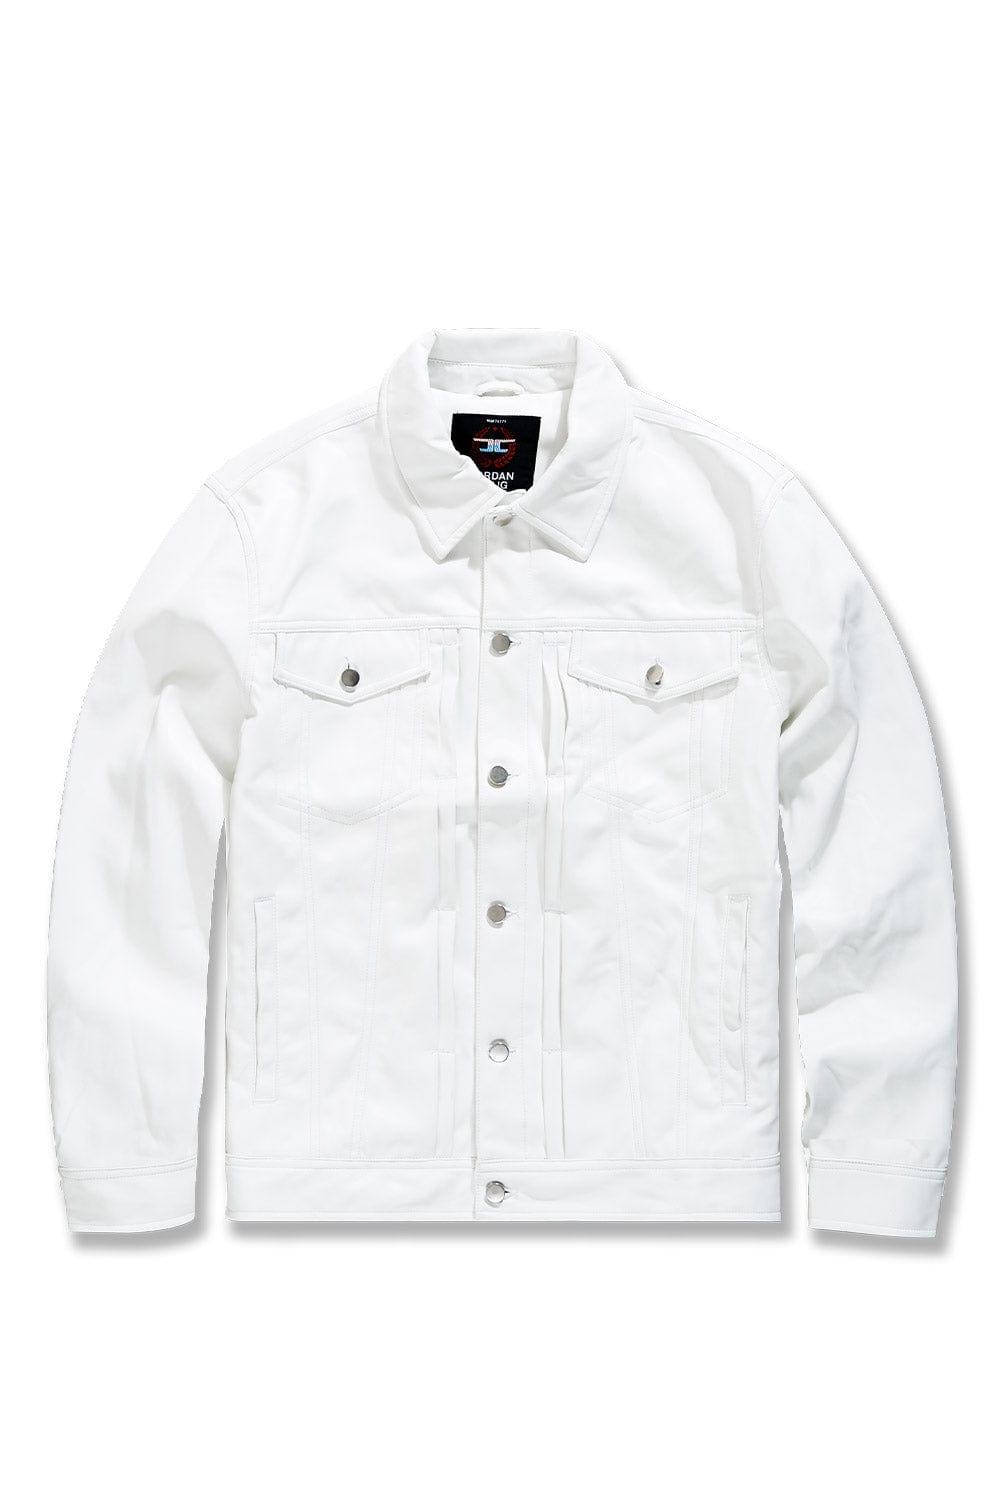 Jordan Craig Thriller Trucker Jacket (White) S / White